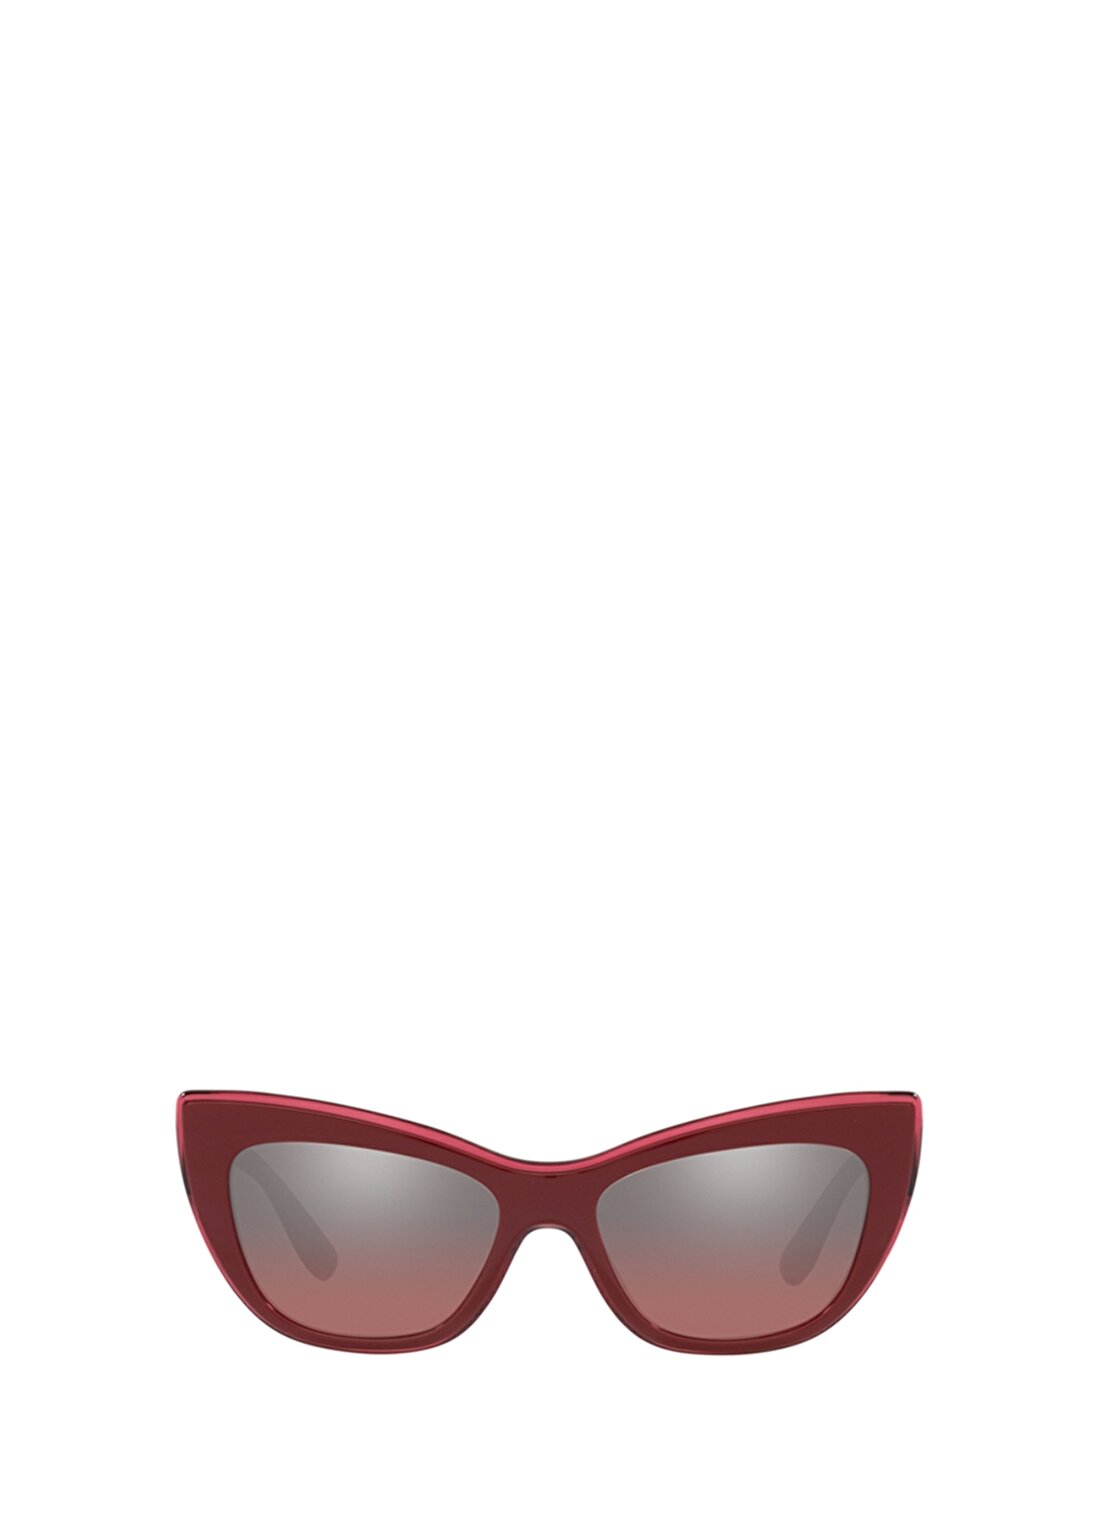 Dolce&Gabbana DG4417 Çekik Bordo Kadın Güneş Gözlüğü